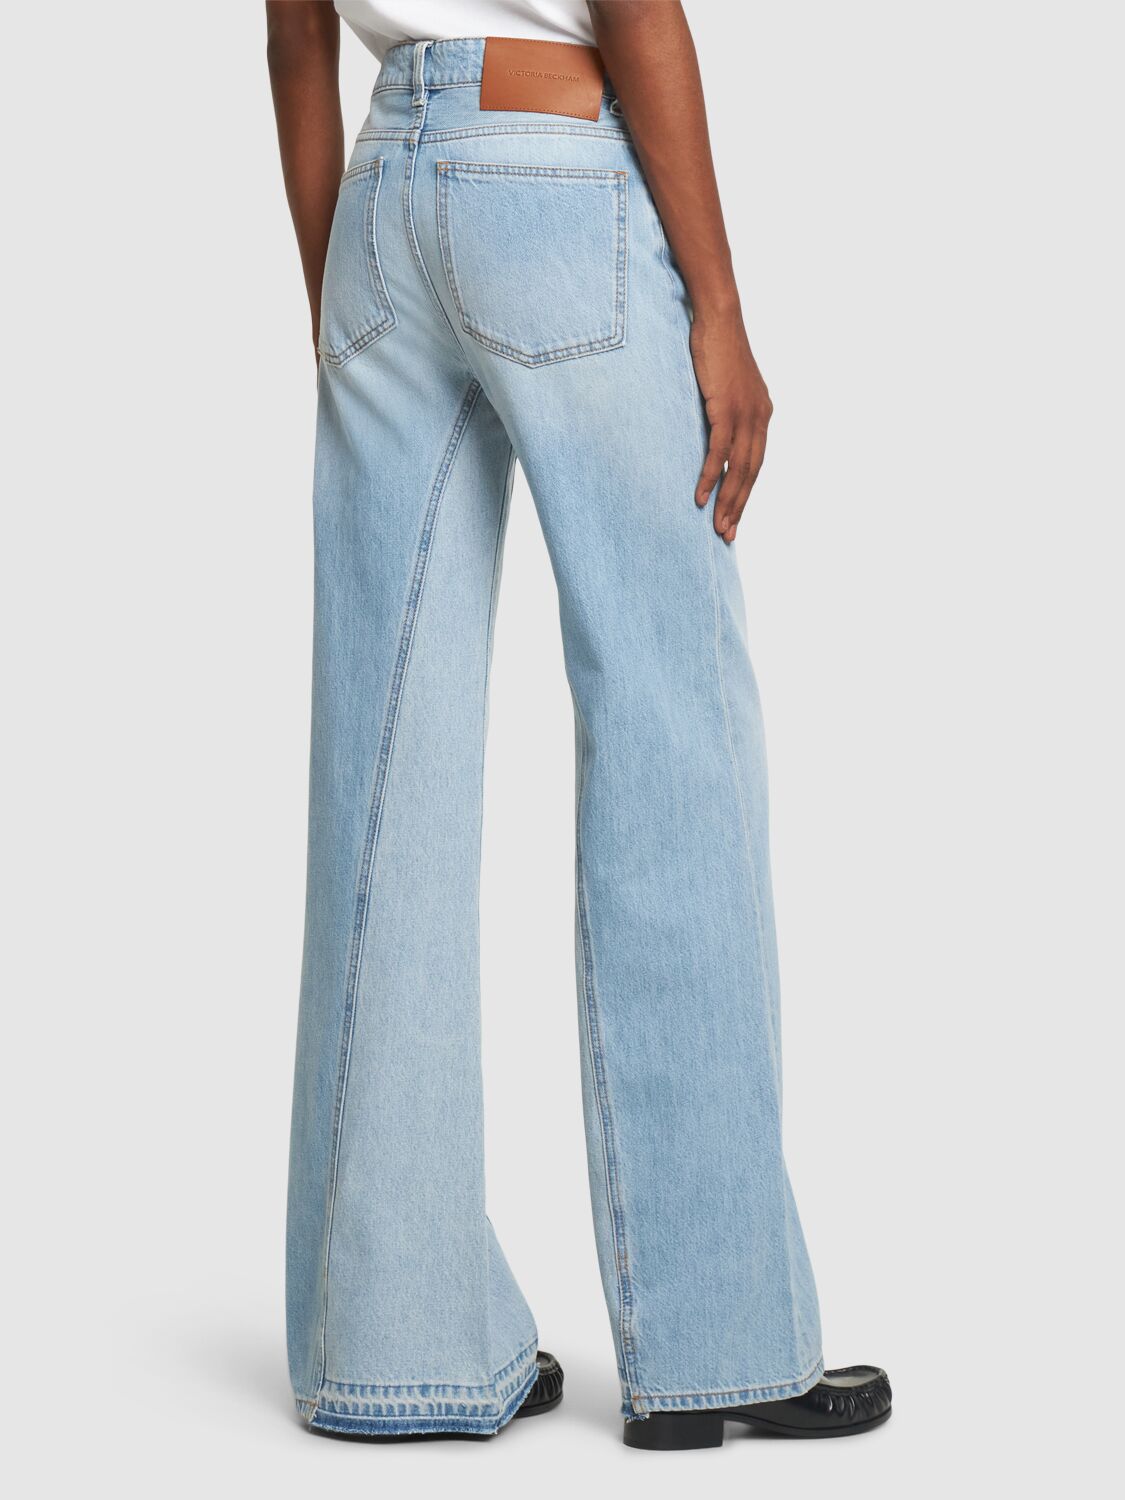 Shop Victoria Beckham Bianca Denim Cotton Flared Jeans In Blue